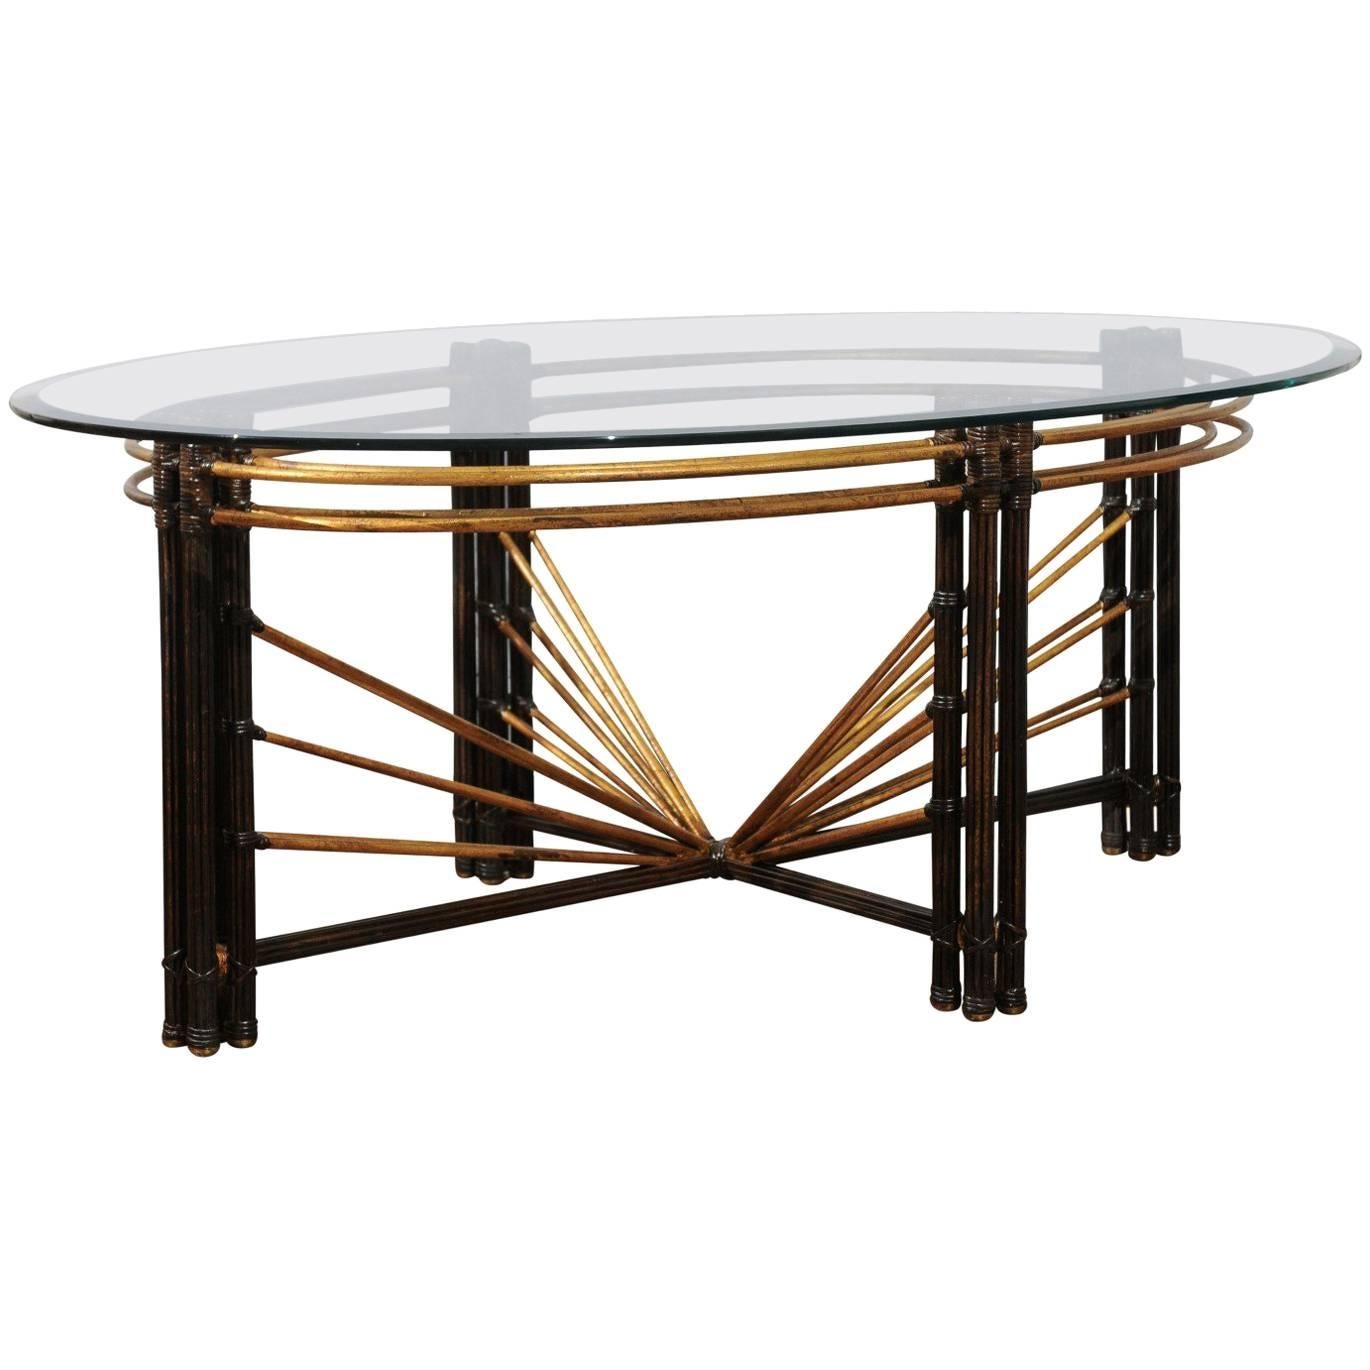 Extraordinaire table basse en acier, faux bambou et laiton, datant d'environ 1970